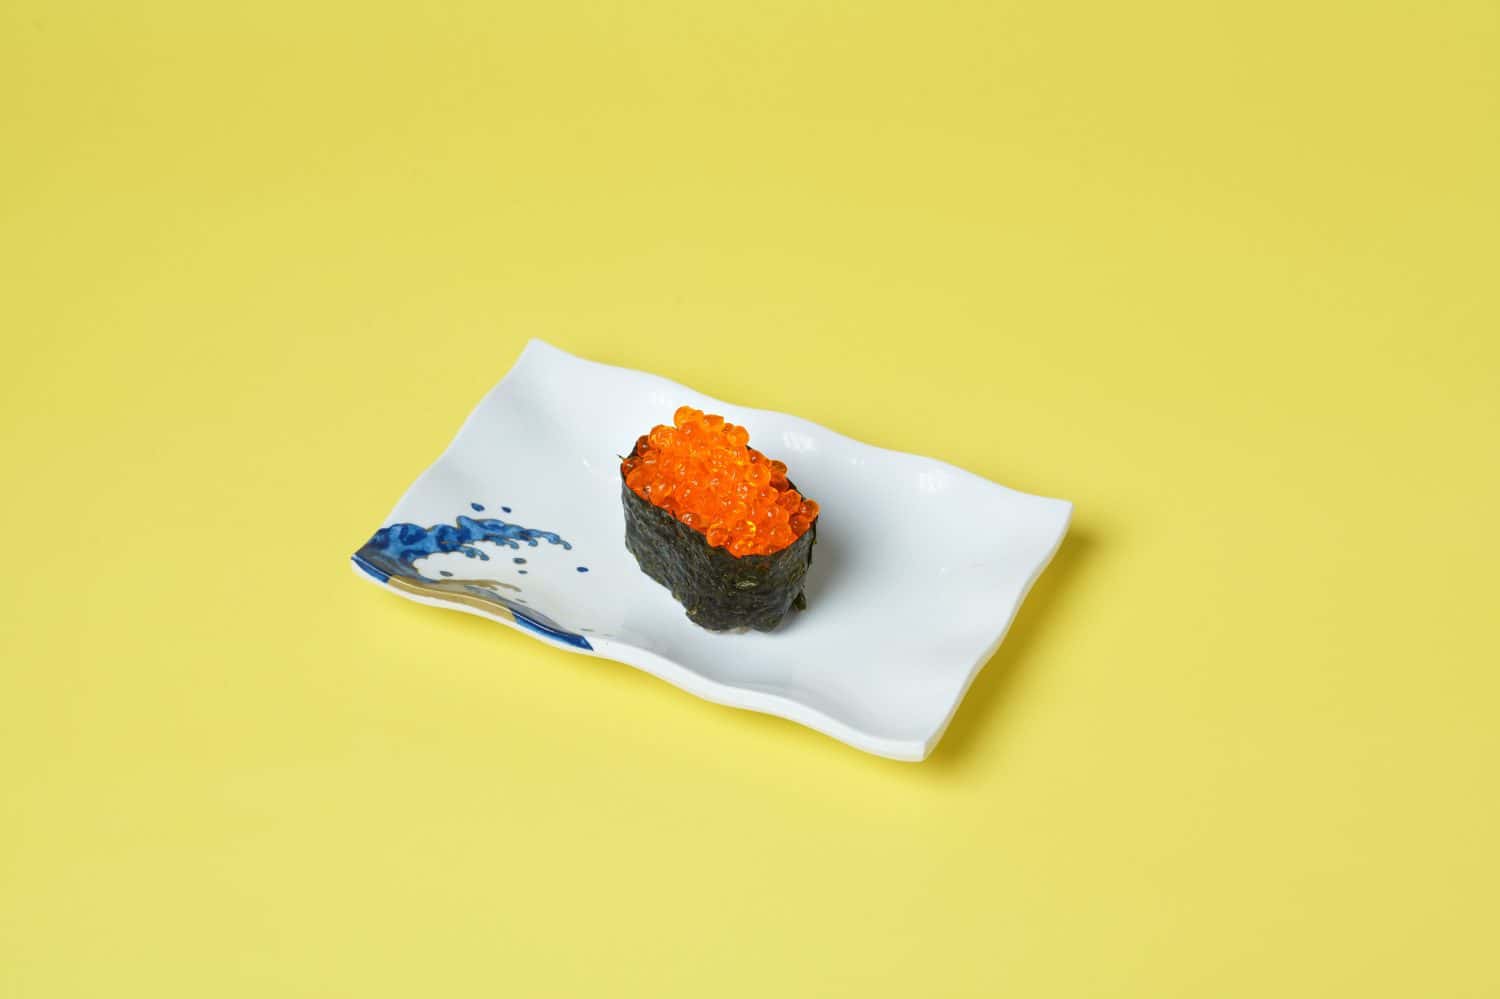 Vegetarian food, Ikura sushi on yellow background.